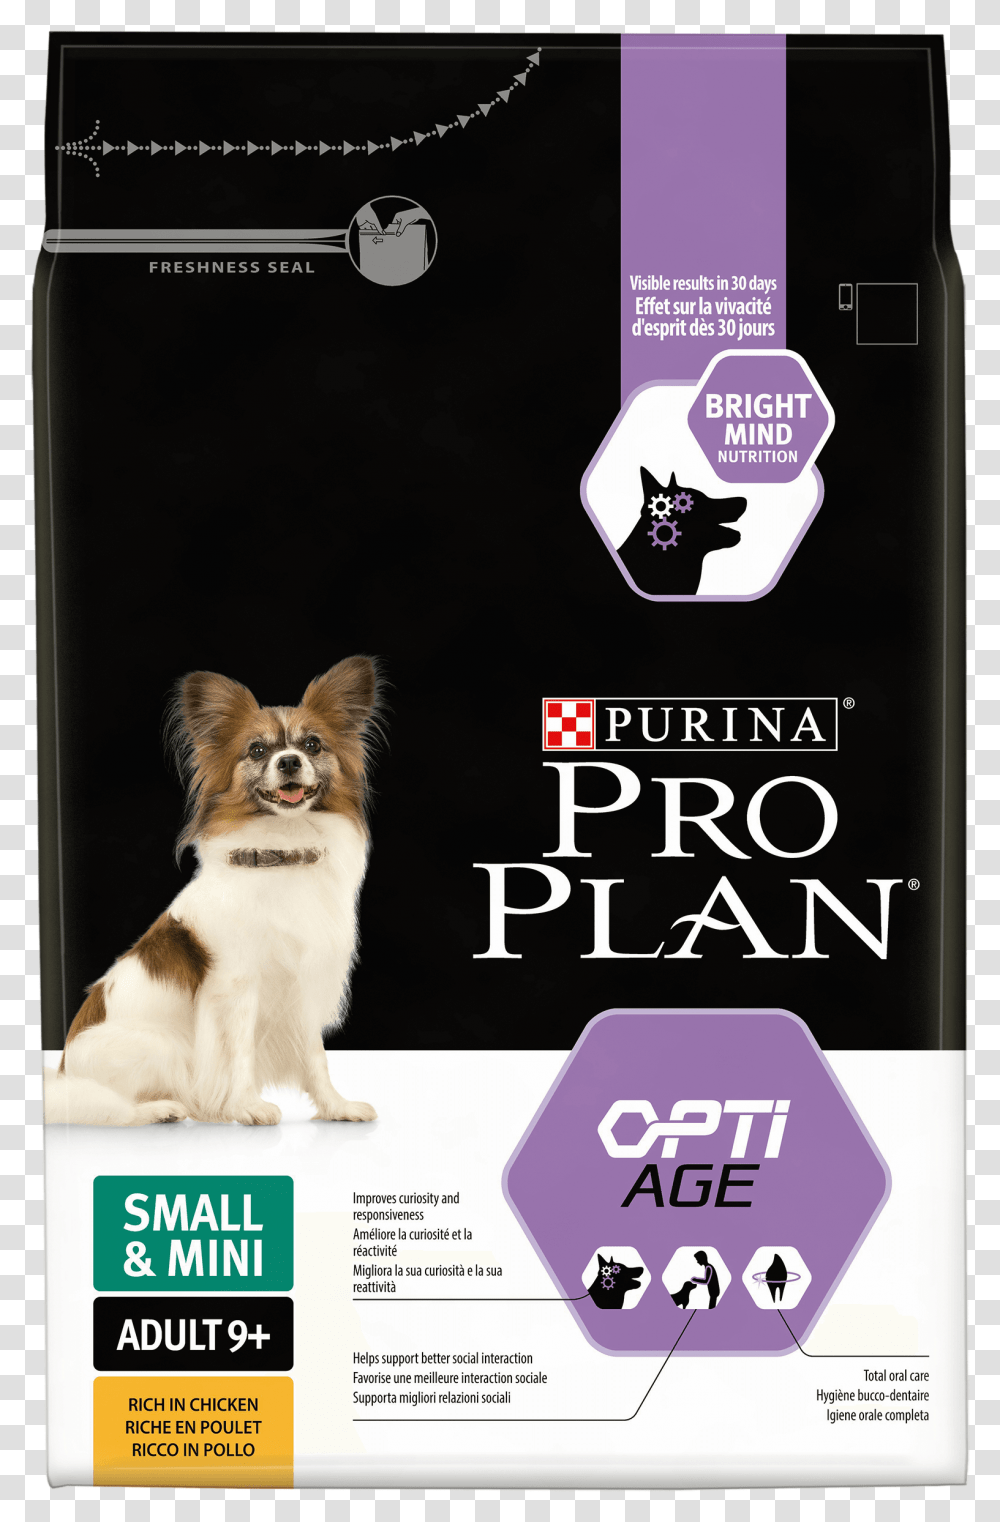 Purina Pro Plan Optiage, Dog, Pet, Canine, Animal Transparent Png